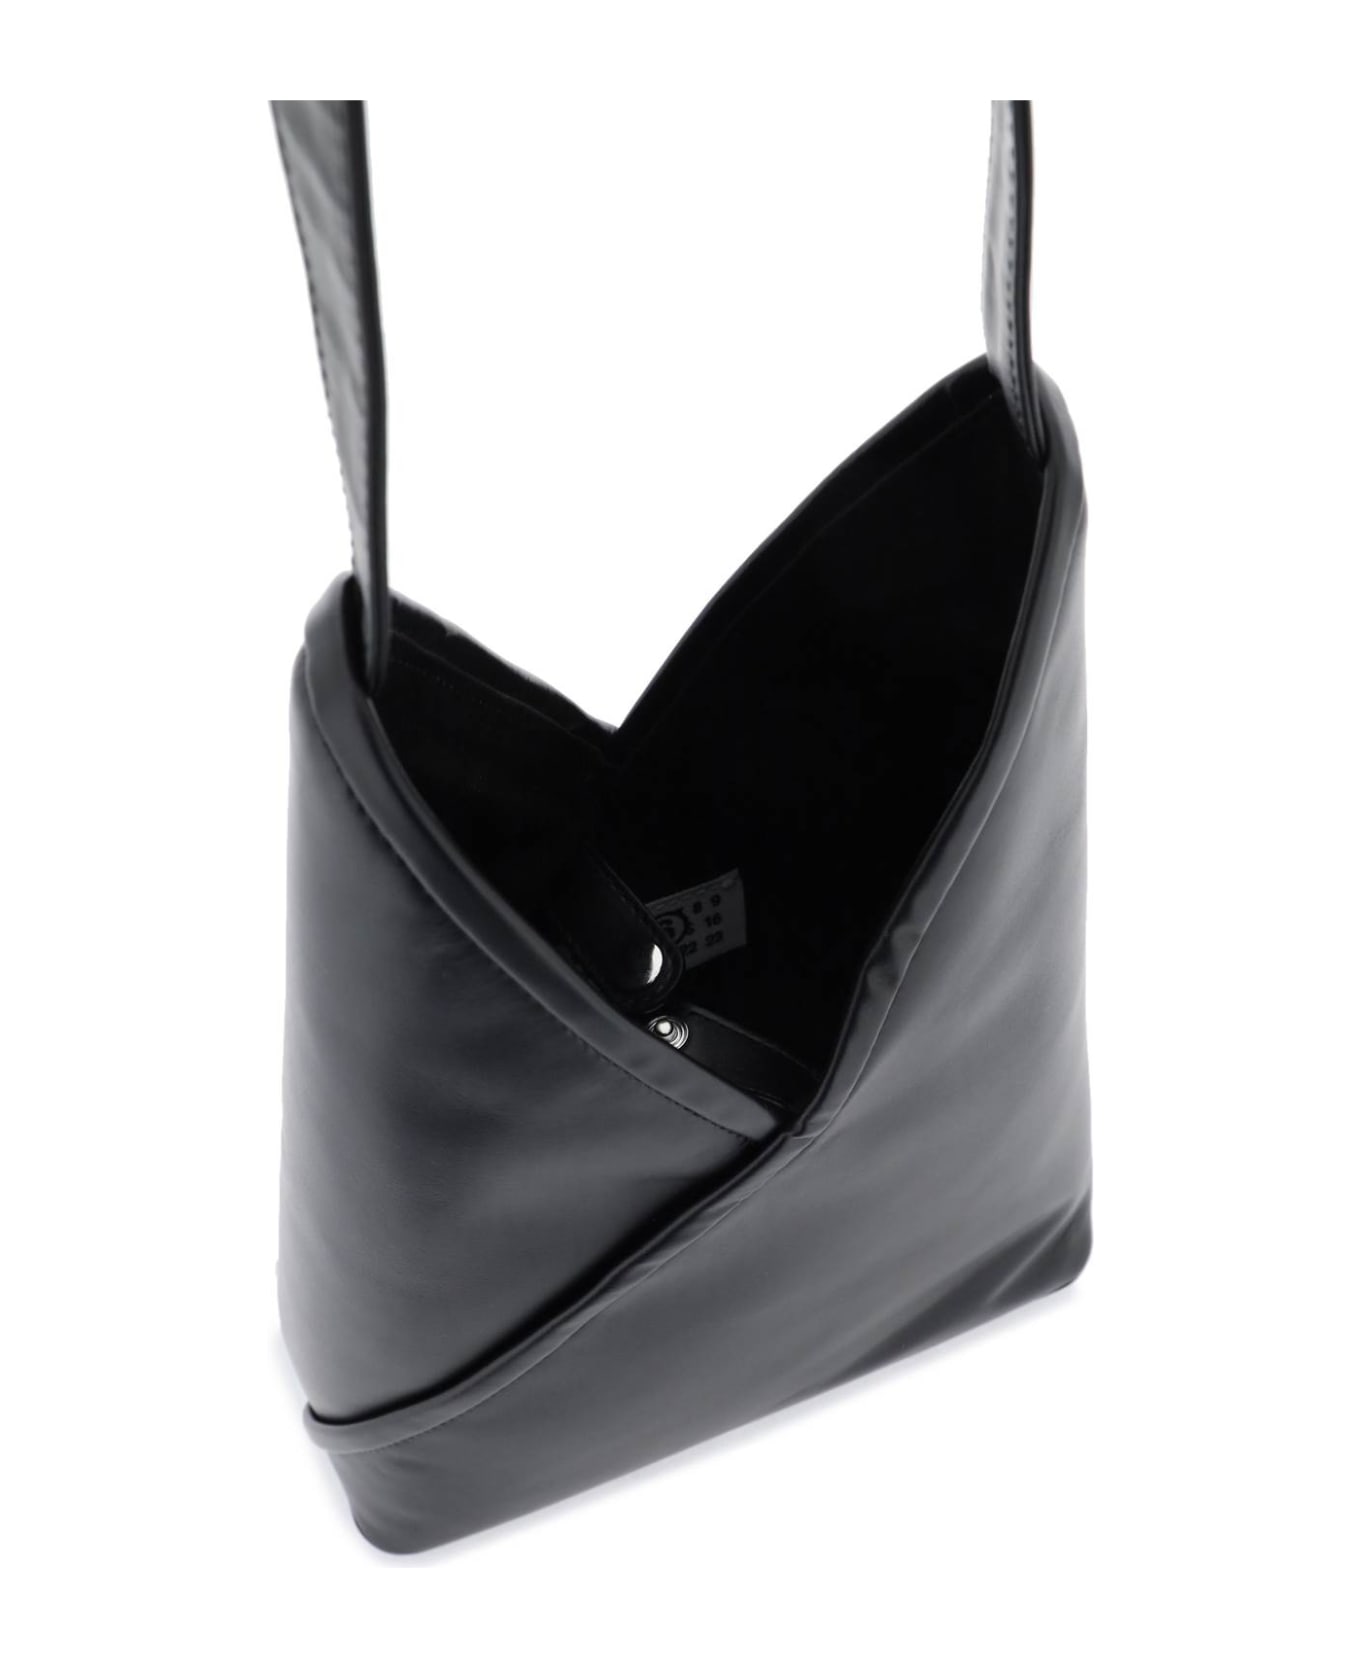 MM6 Maison Margiela Black Leather 'japanese Bag' - black